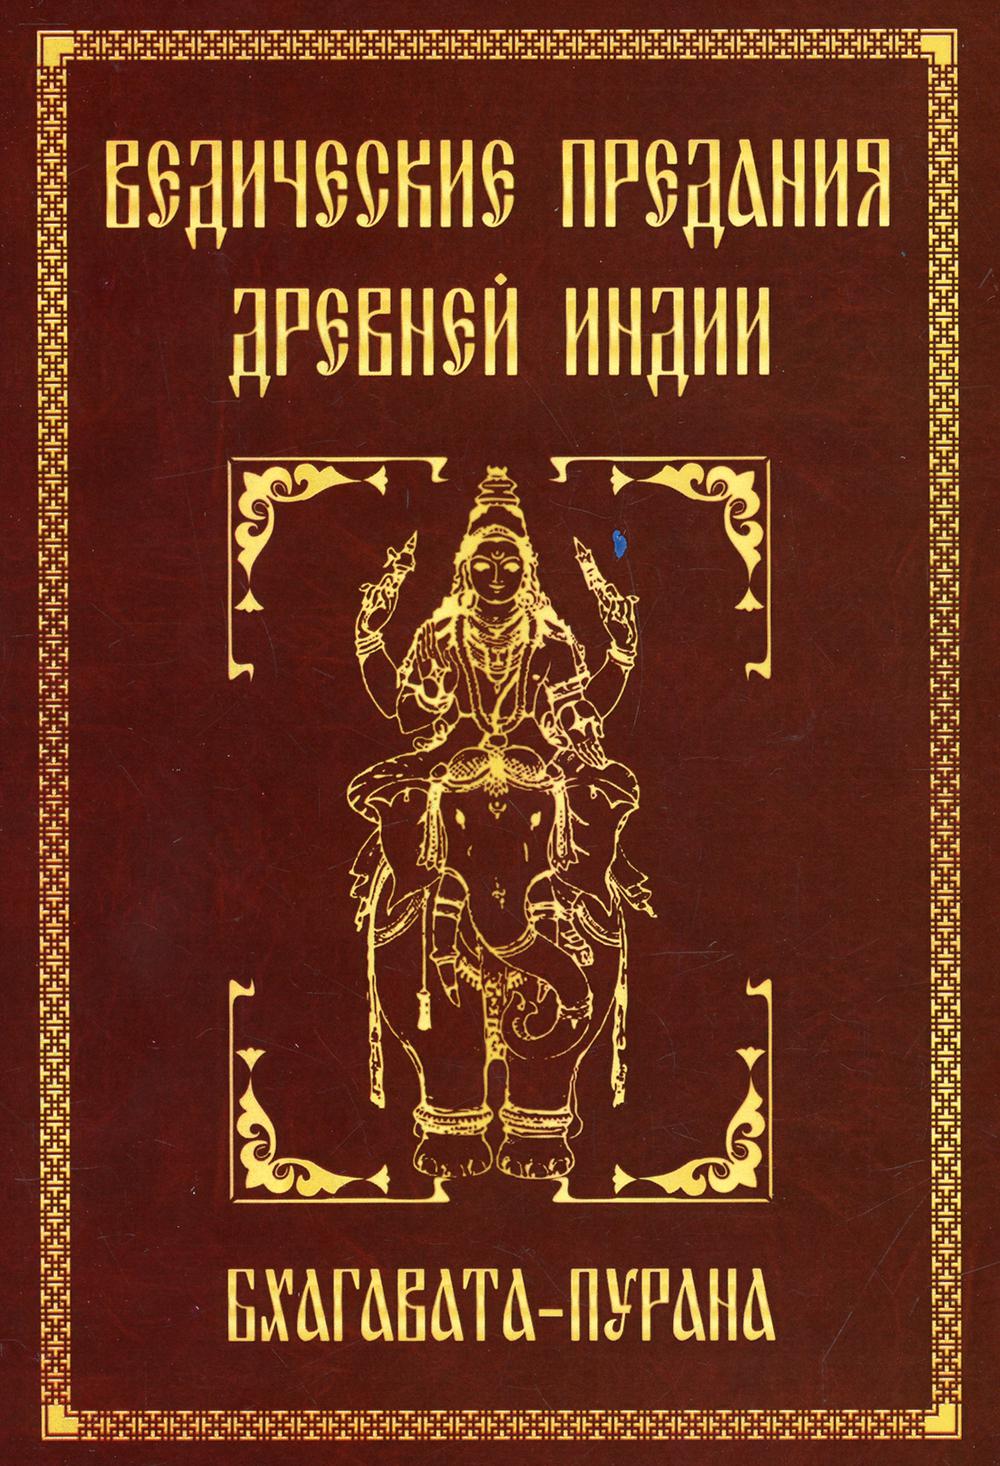 фото Книга ведические предания древней индии. бхагавата - пурана амрита